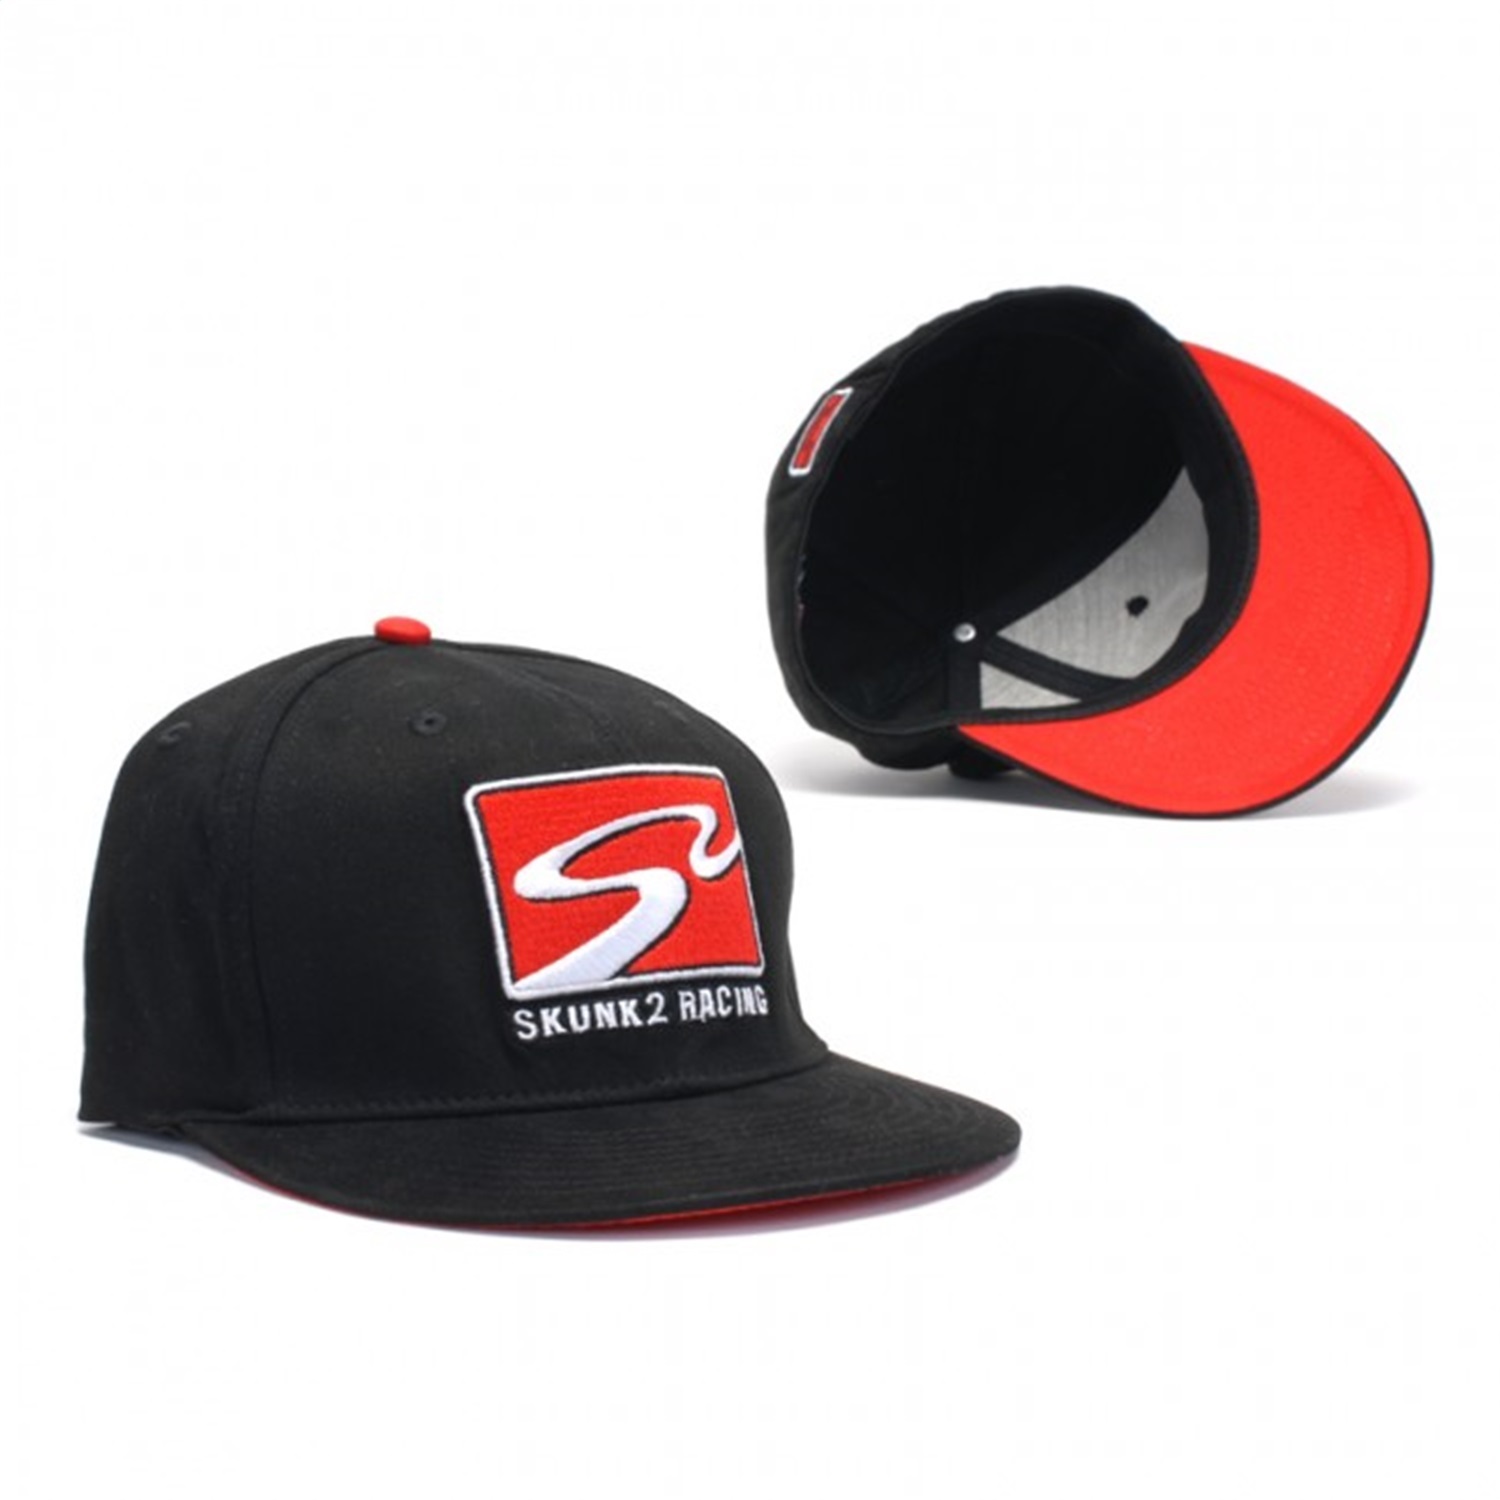 Skunk2 Racing 731-99-1502 Flex Fit Baseball Cap